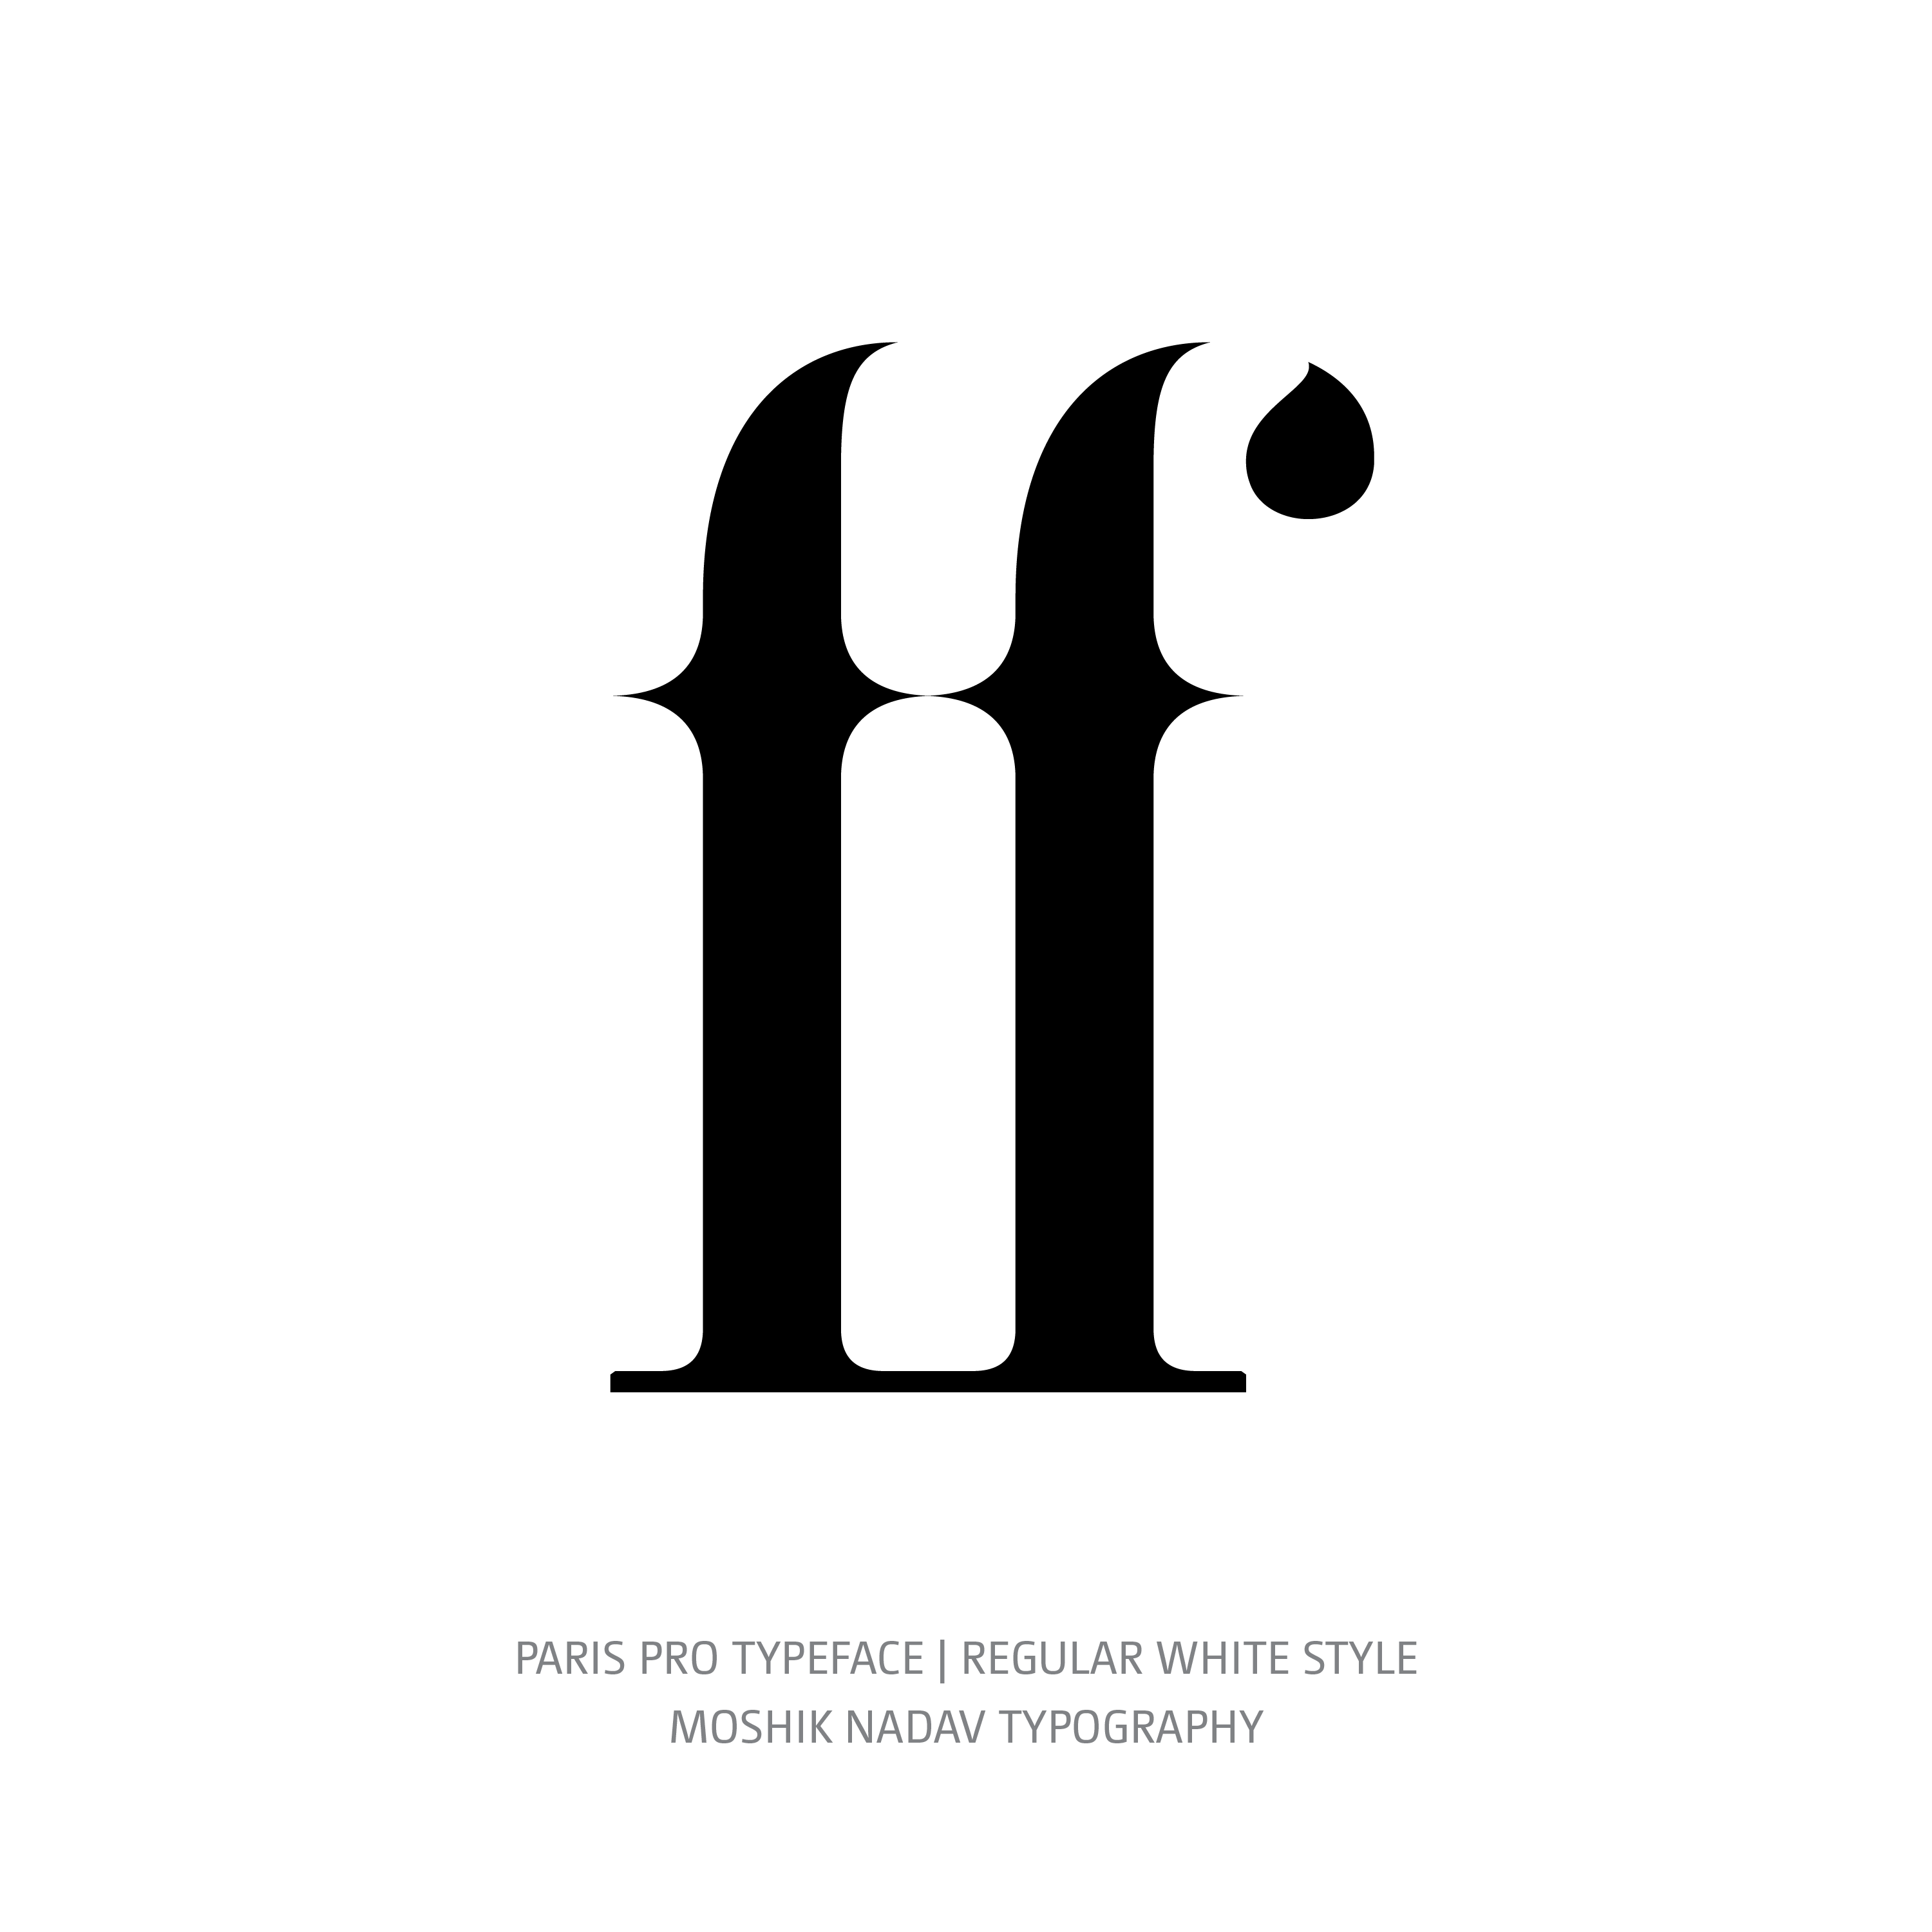 Paris Pro Typeface Regular White ff ligature